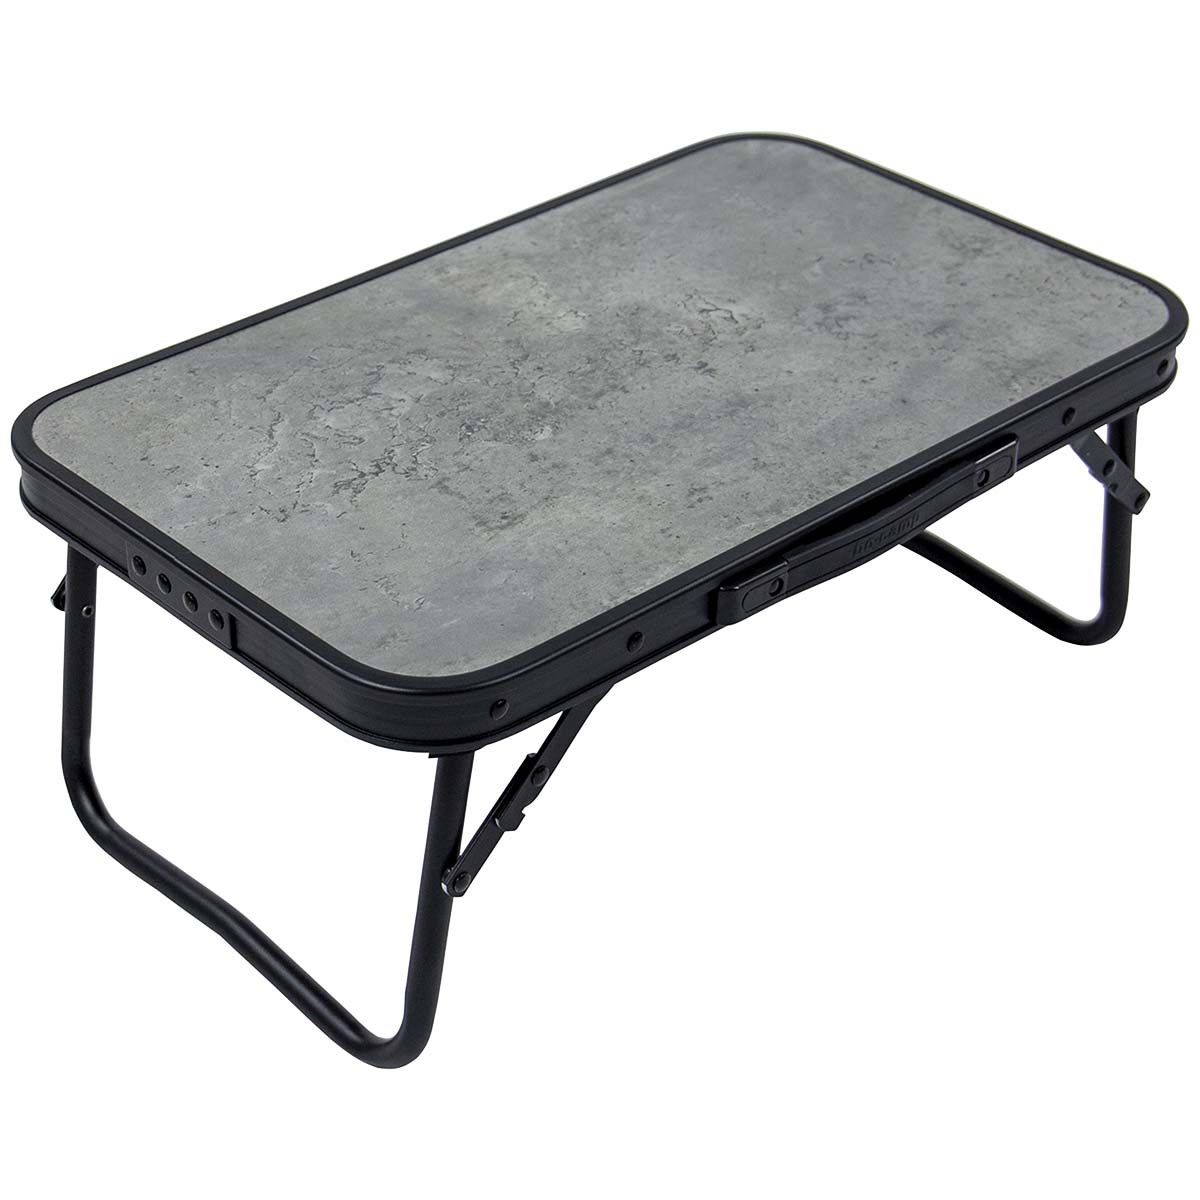 1404180 Een stijlvolle aluminium klaptafel met een industriële uitstraling en betonlook tafelblad. De tafel is zeer compact op te bergen door de klapbare poten. Bovendien is de tafel voorzien van een net onder het MDF tafelblad om spullen in op te bergen.